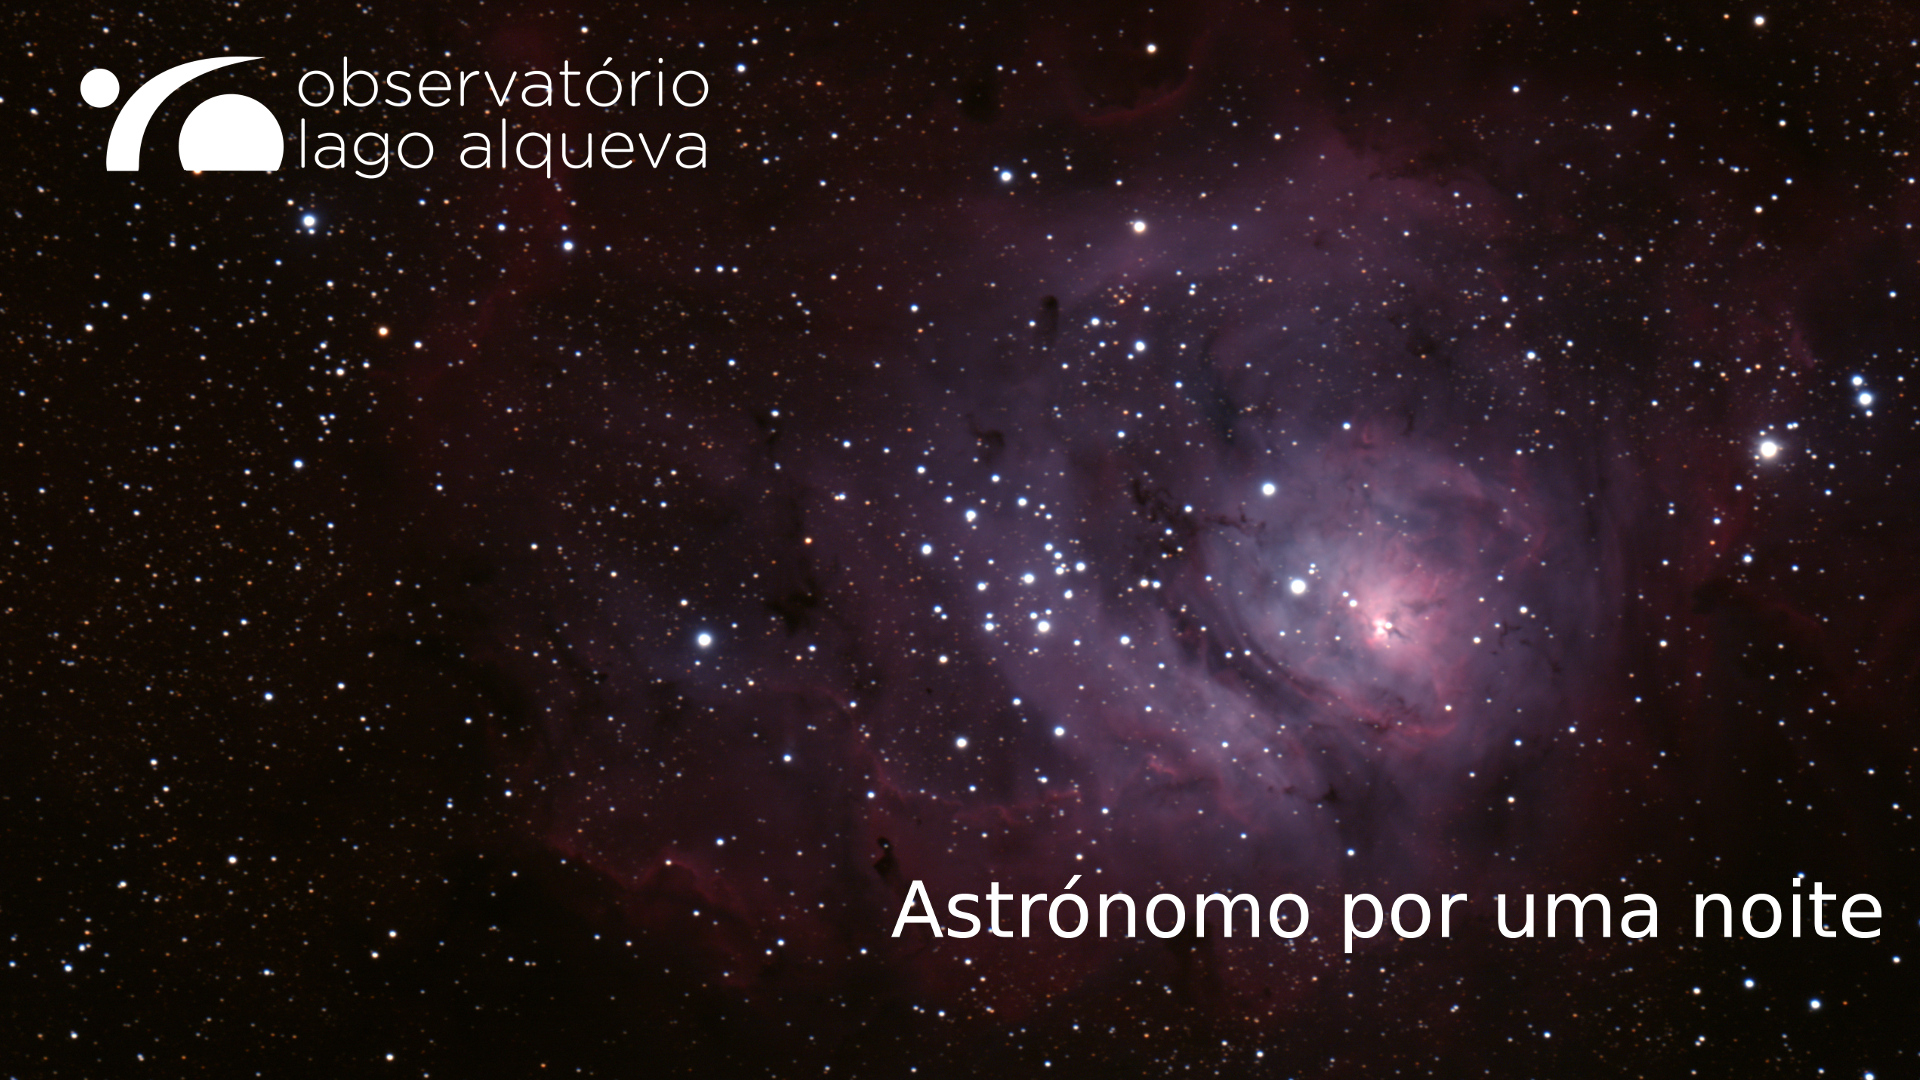 (Português) Astrónomo por uma noite